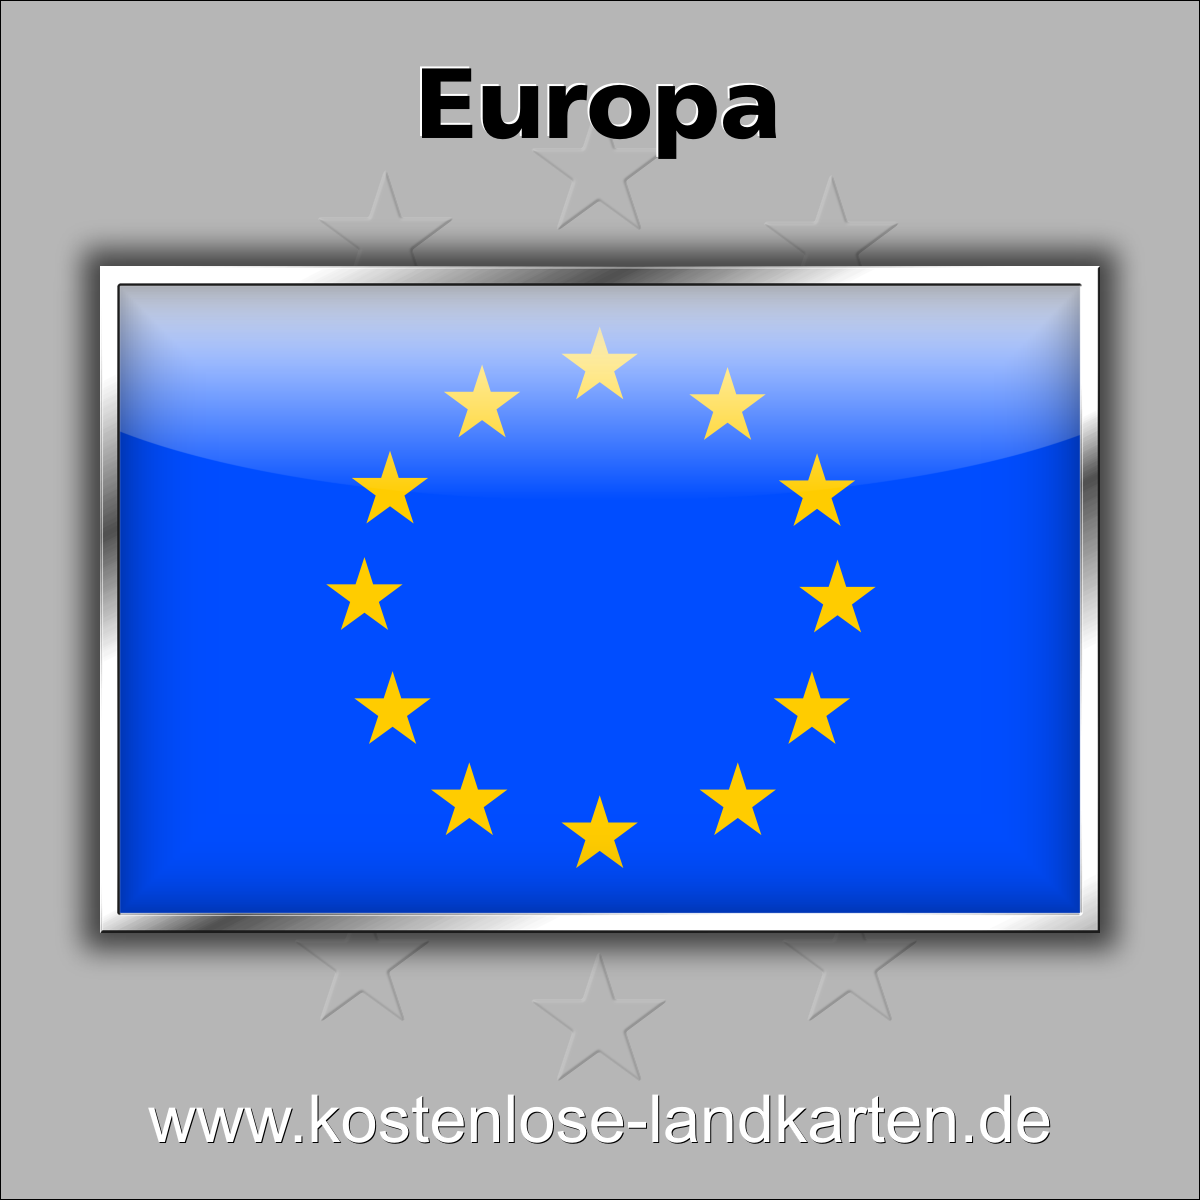 http://www.kostenlose-landkarten.de/Europa-Flaggen/Europa.png